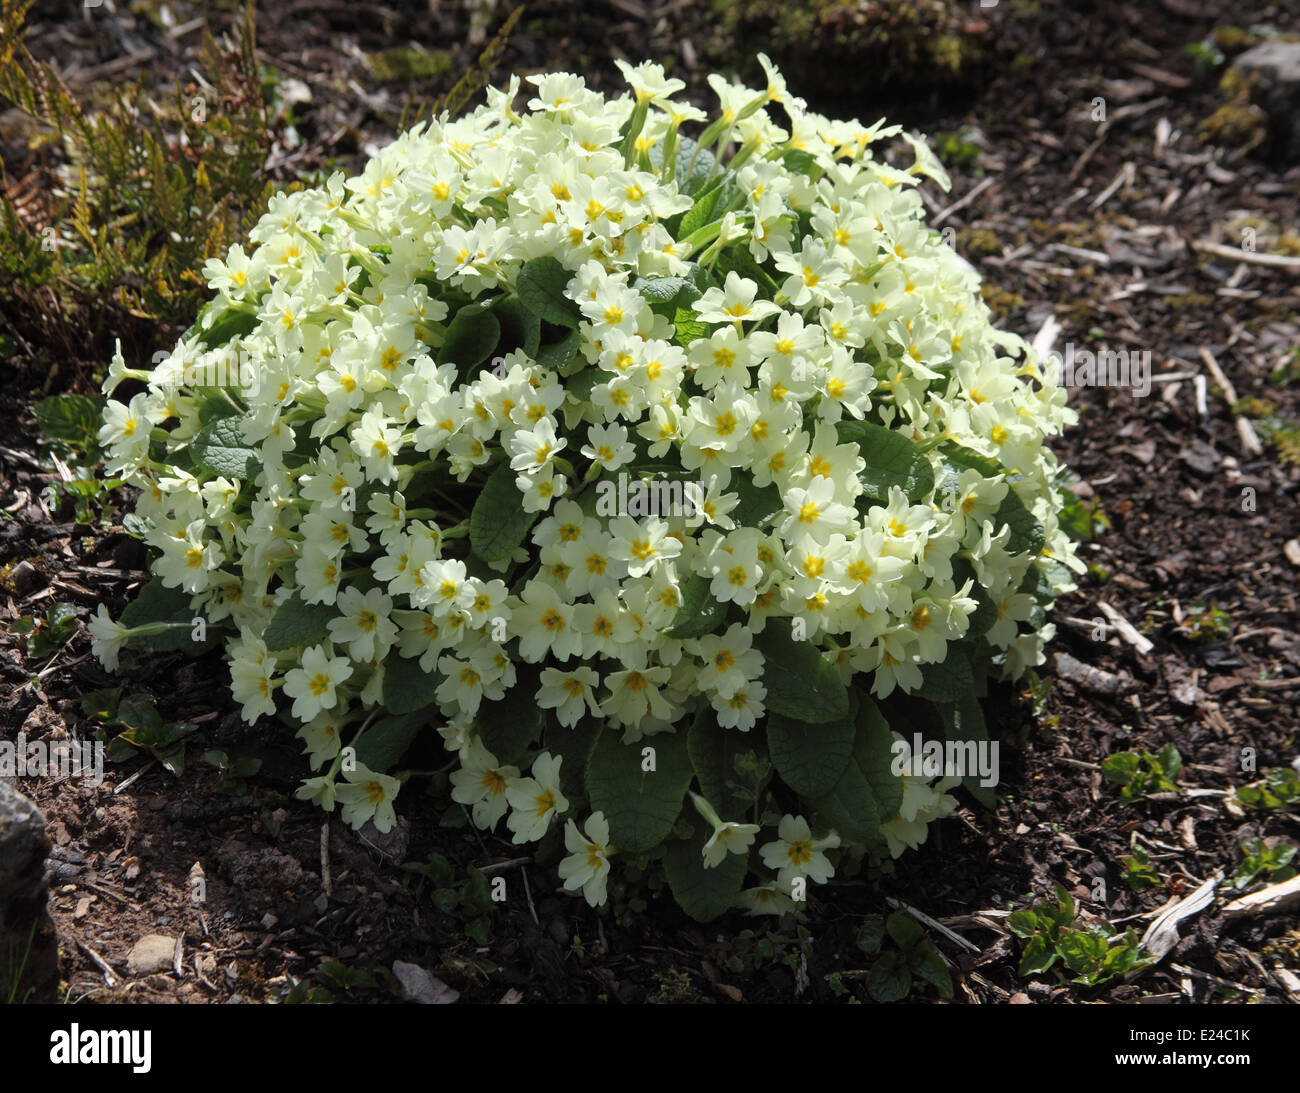 Primula vulgaris Primrose plant in flower Stock Photo